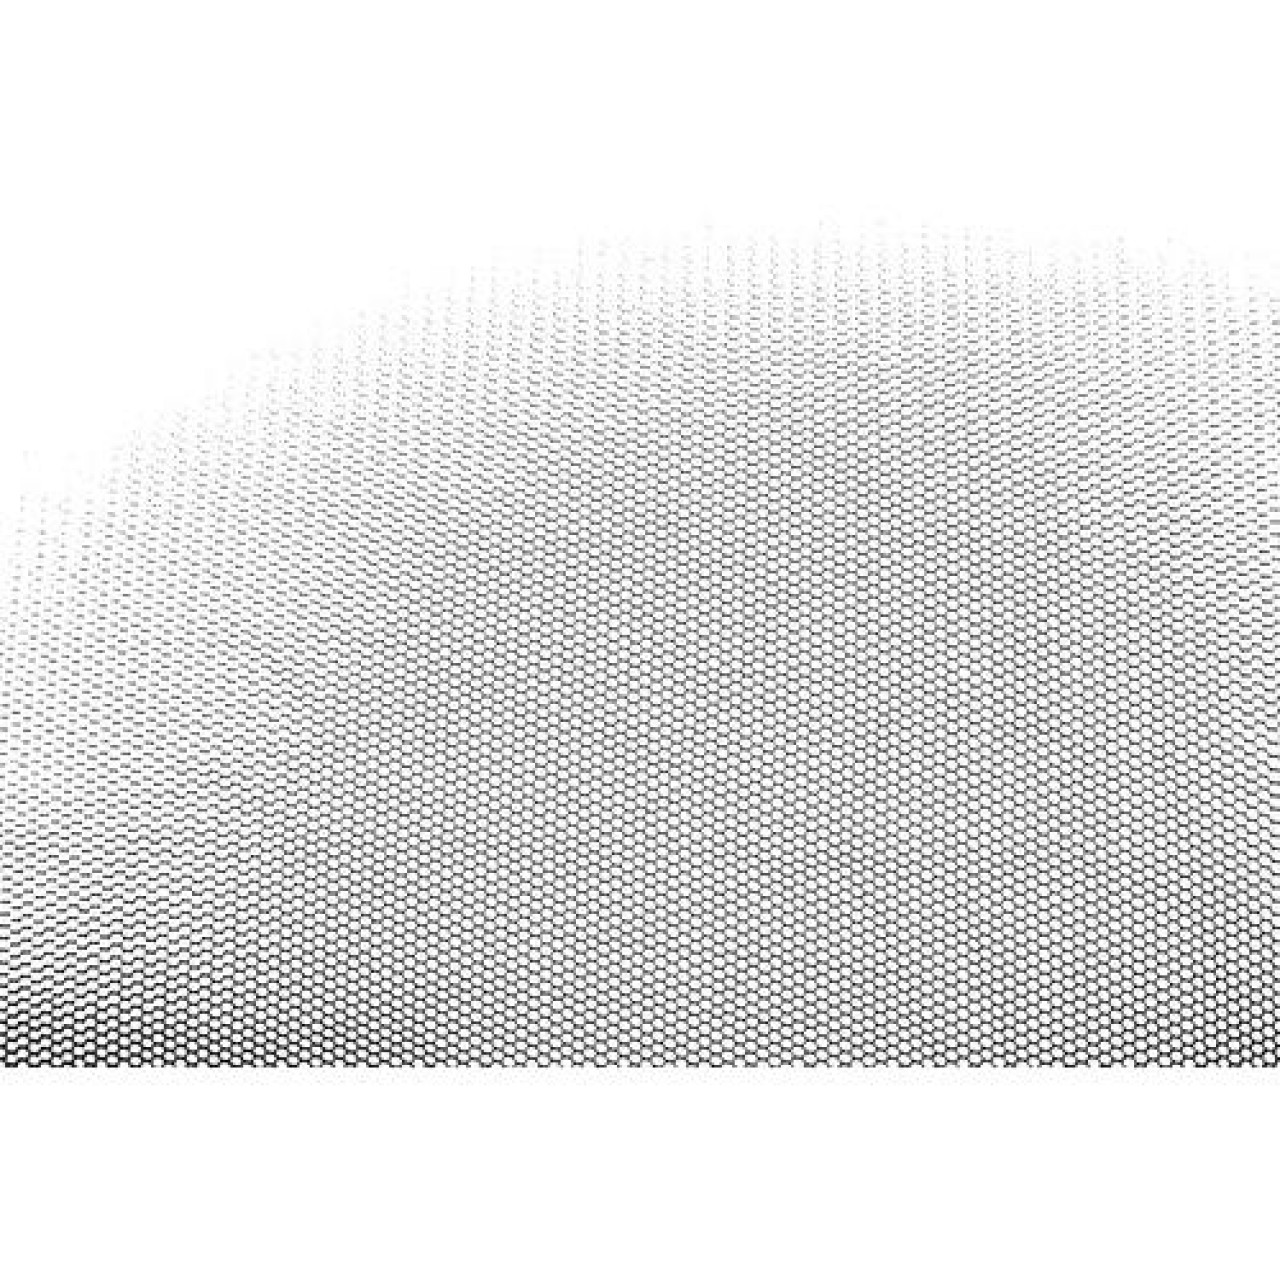 ΣΙΤΑ ΠΑΡΑΘΥΡΩΝ ΓΙΑ ΚΟΥΝΟΥΠΙΑ NO-MOSKITO (130 Χ 150 cm)